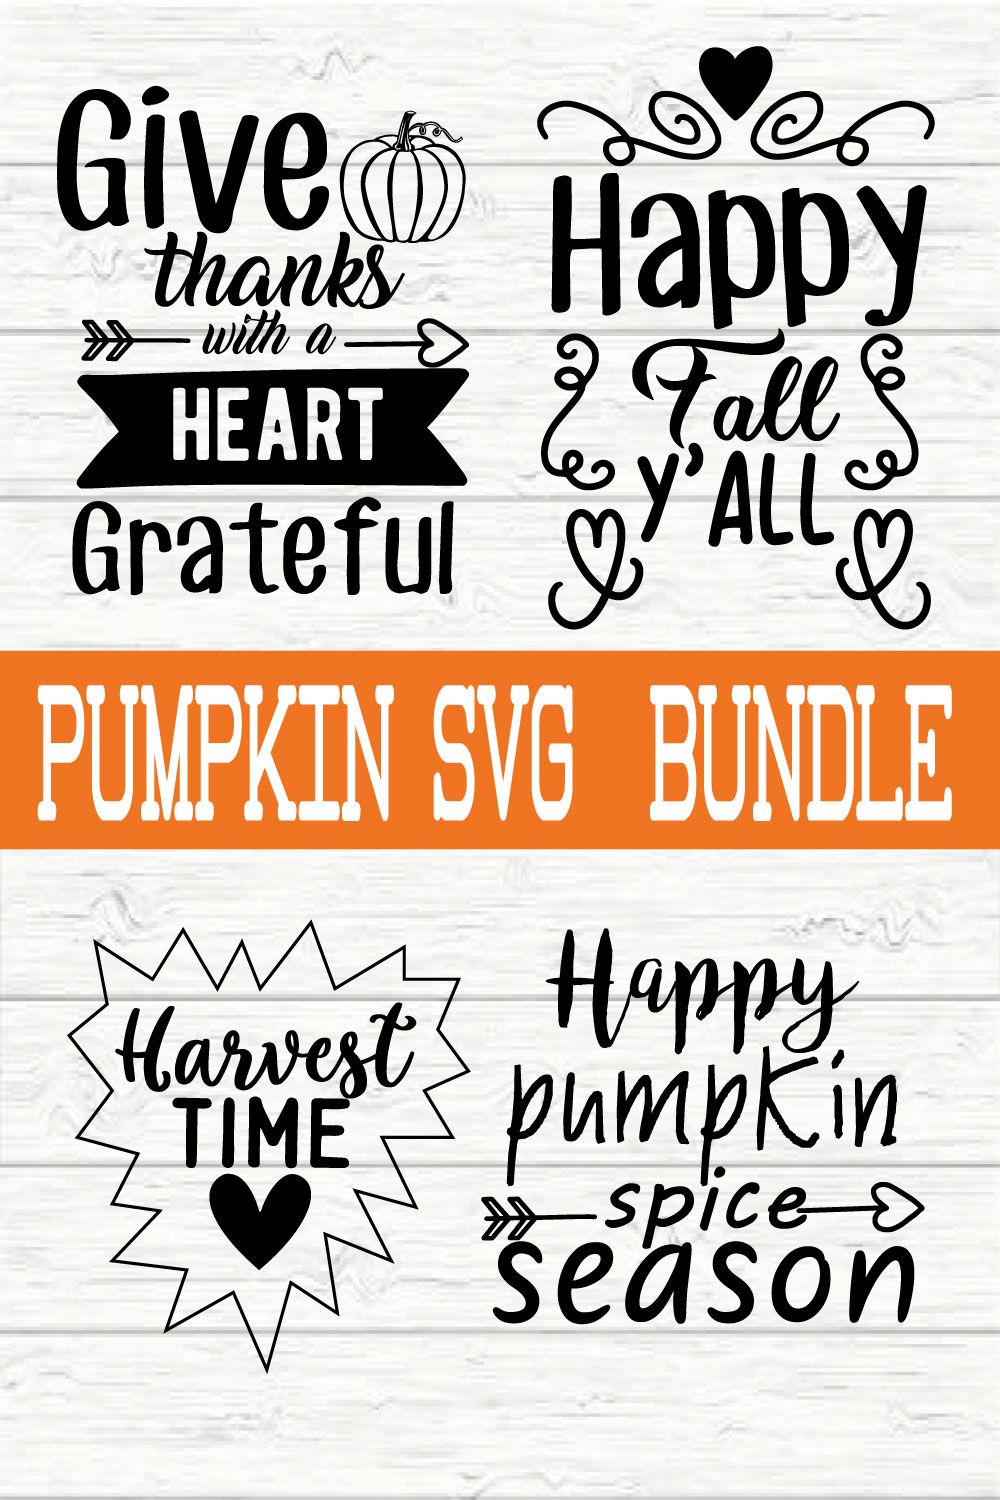 Pumpkin Svg Bundle vol 2 pinterest preview image.